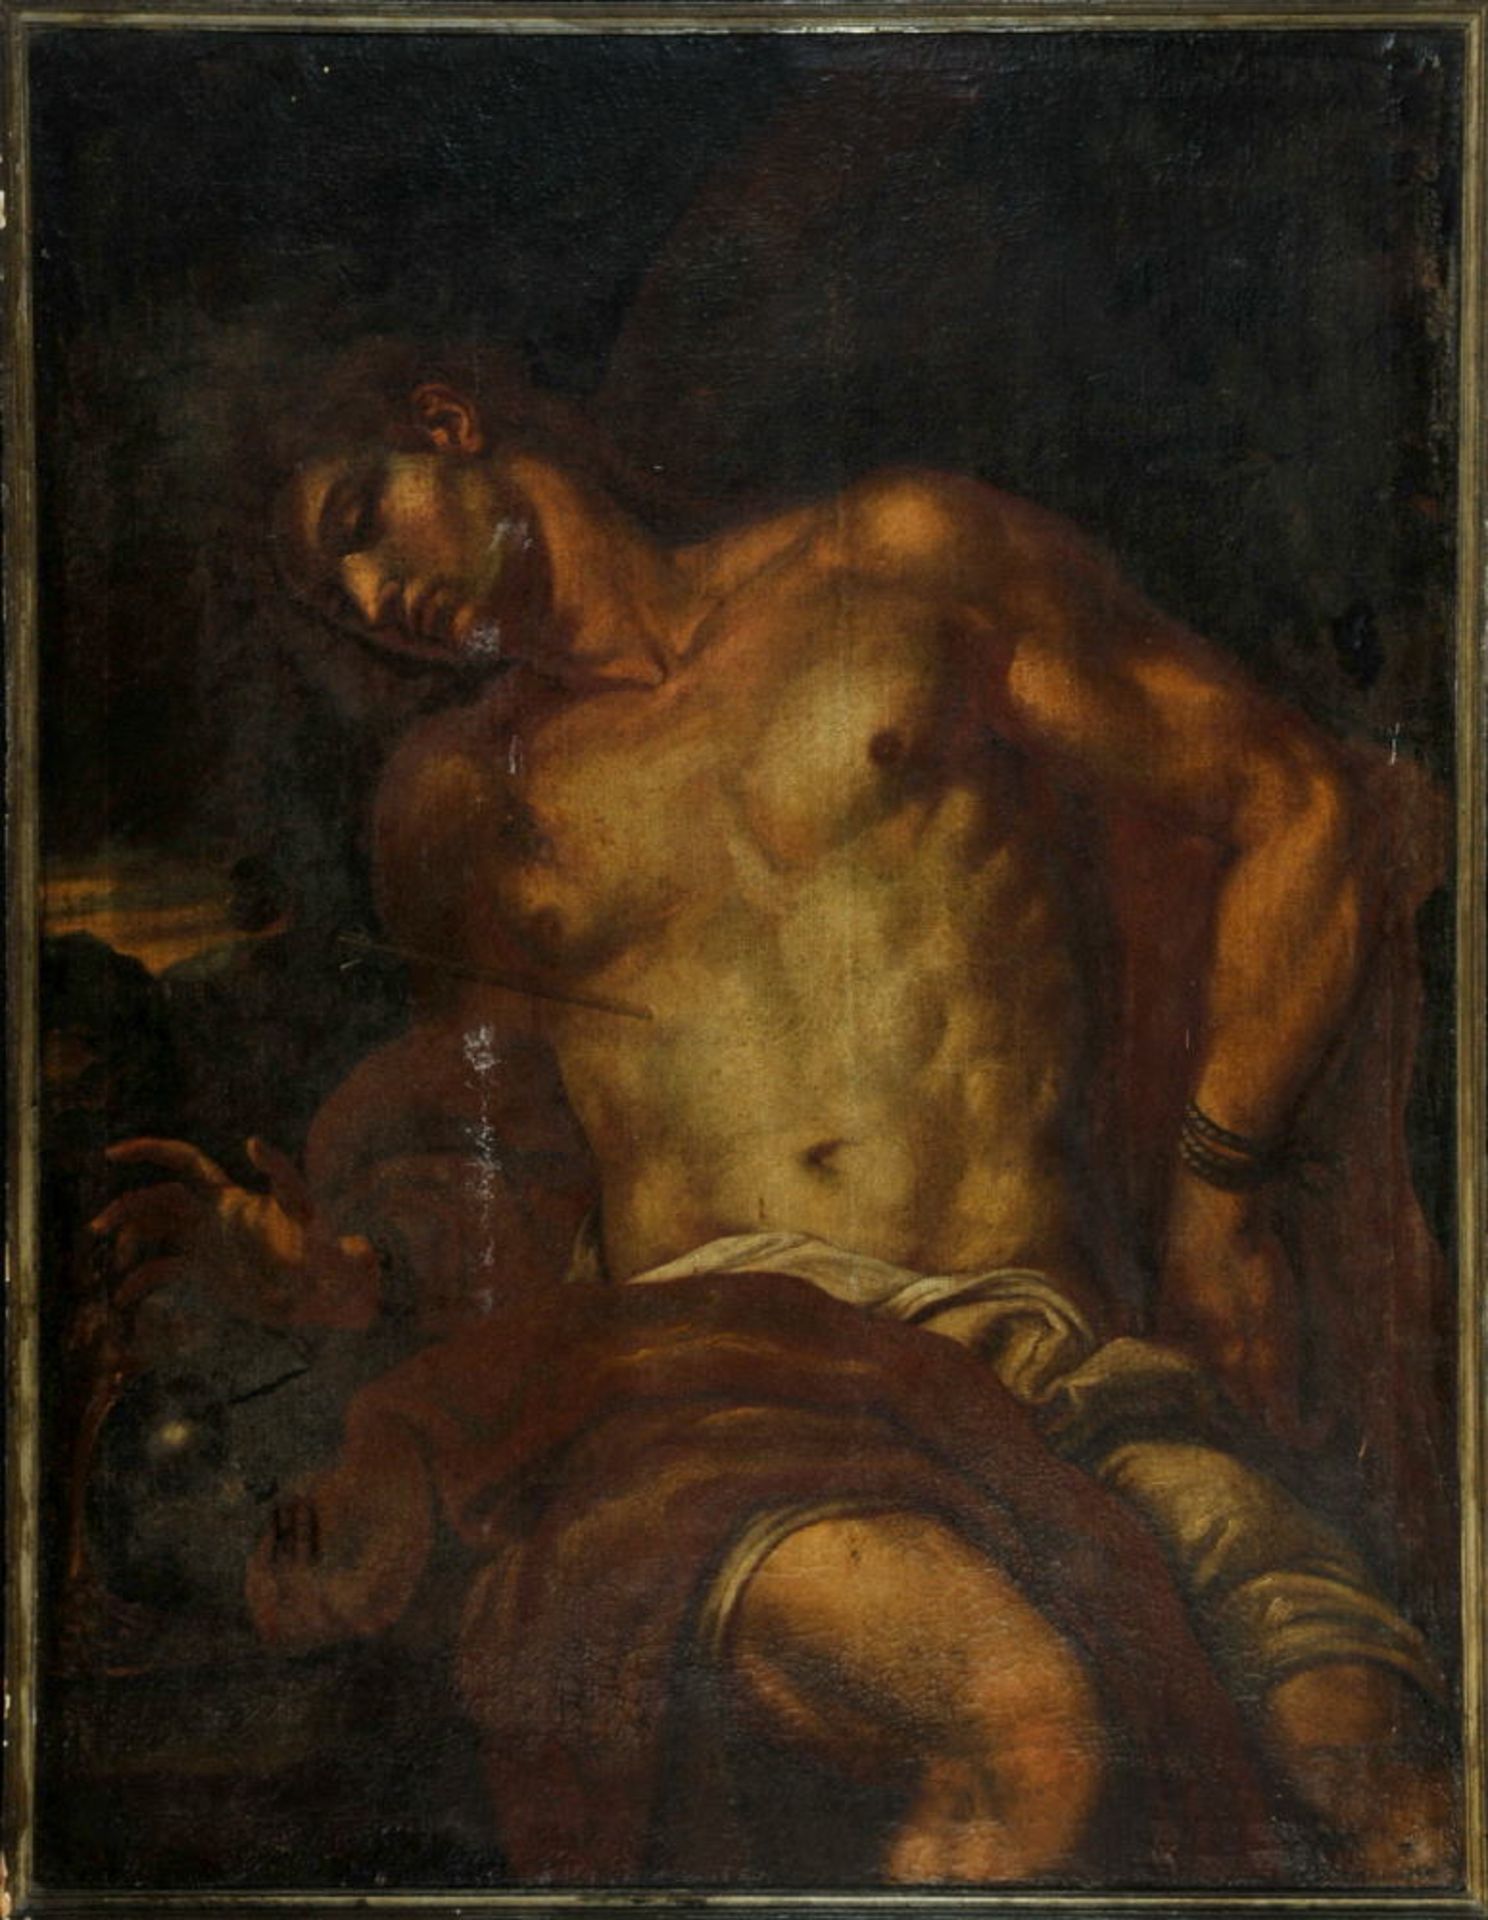 Bildnismaler des 17. Jh. , ItalienÖl/Lwd, 124 x 97 cm, " Hl. Sebastian ", kleinere Einrisse,